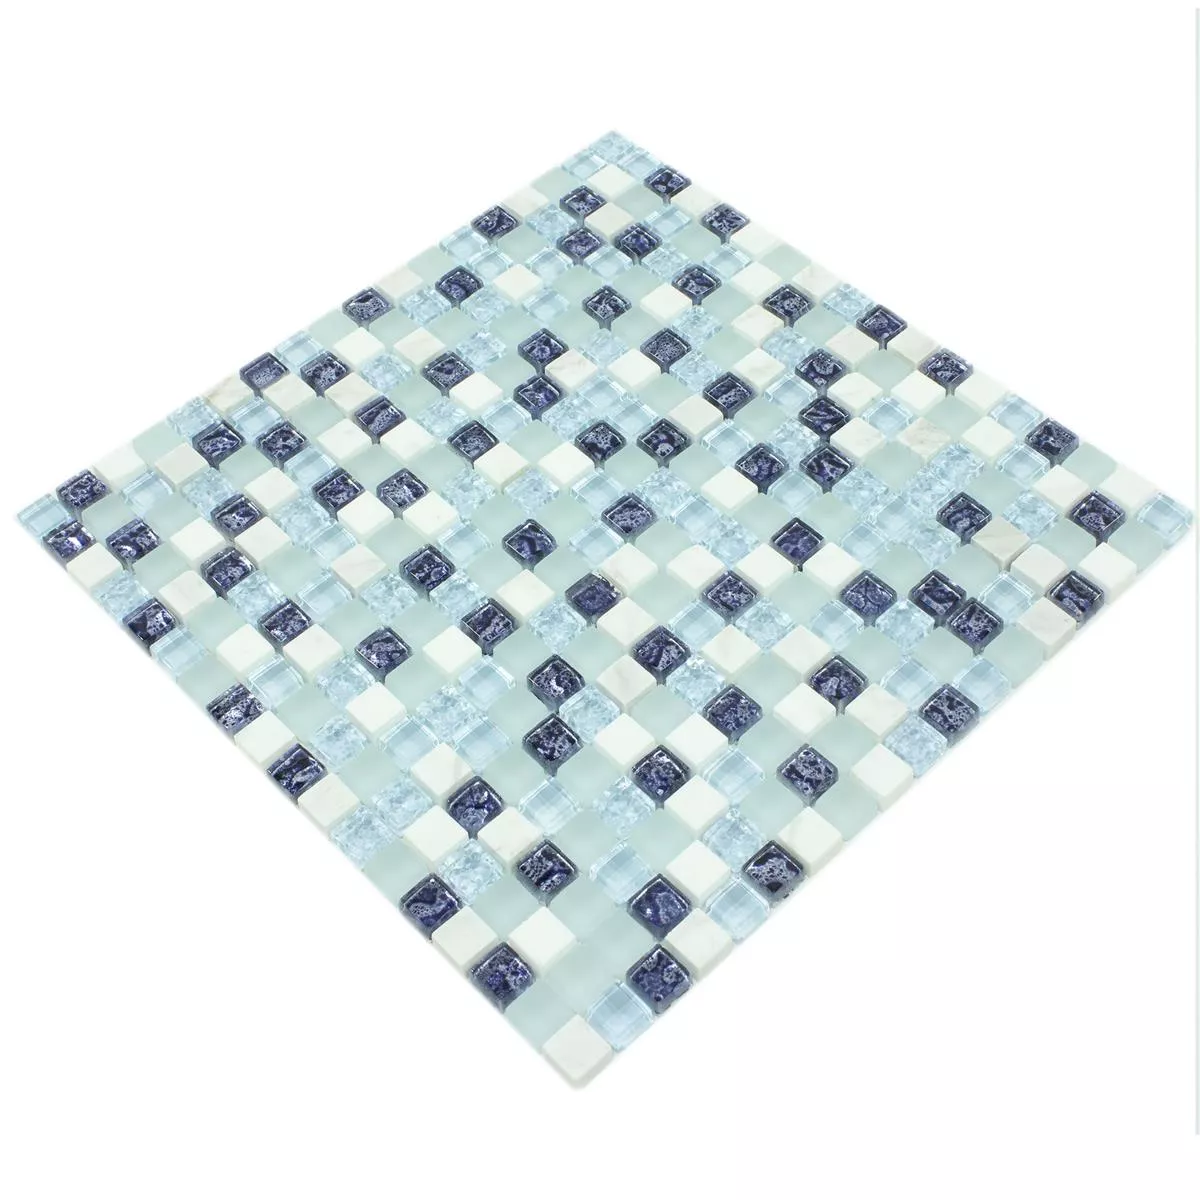 Campione Mosaico Di Vetro Piastrelle Lexington Vetro Mix di Materiali Blu